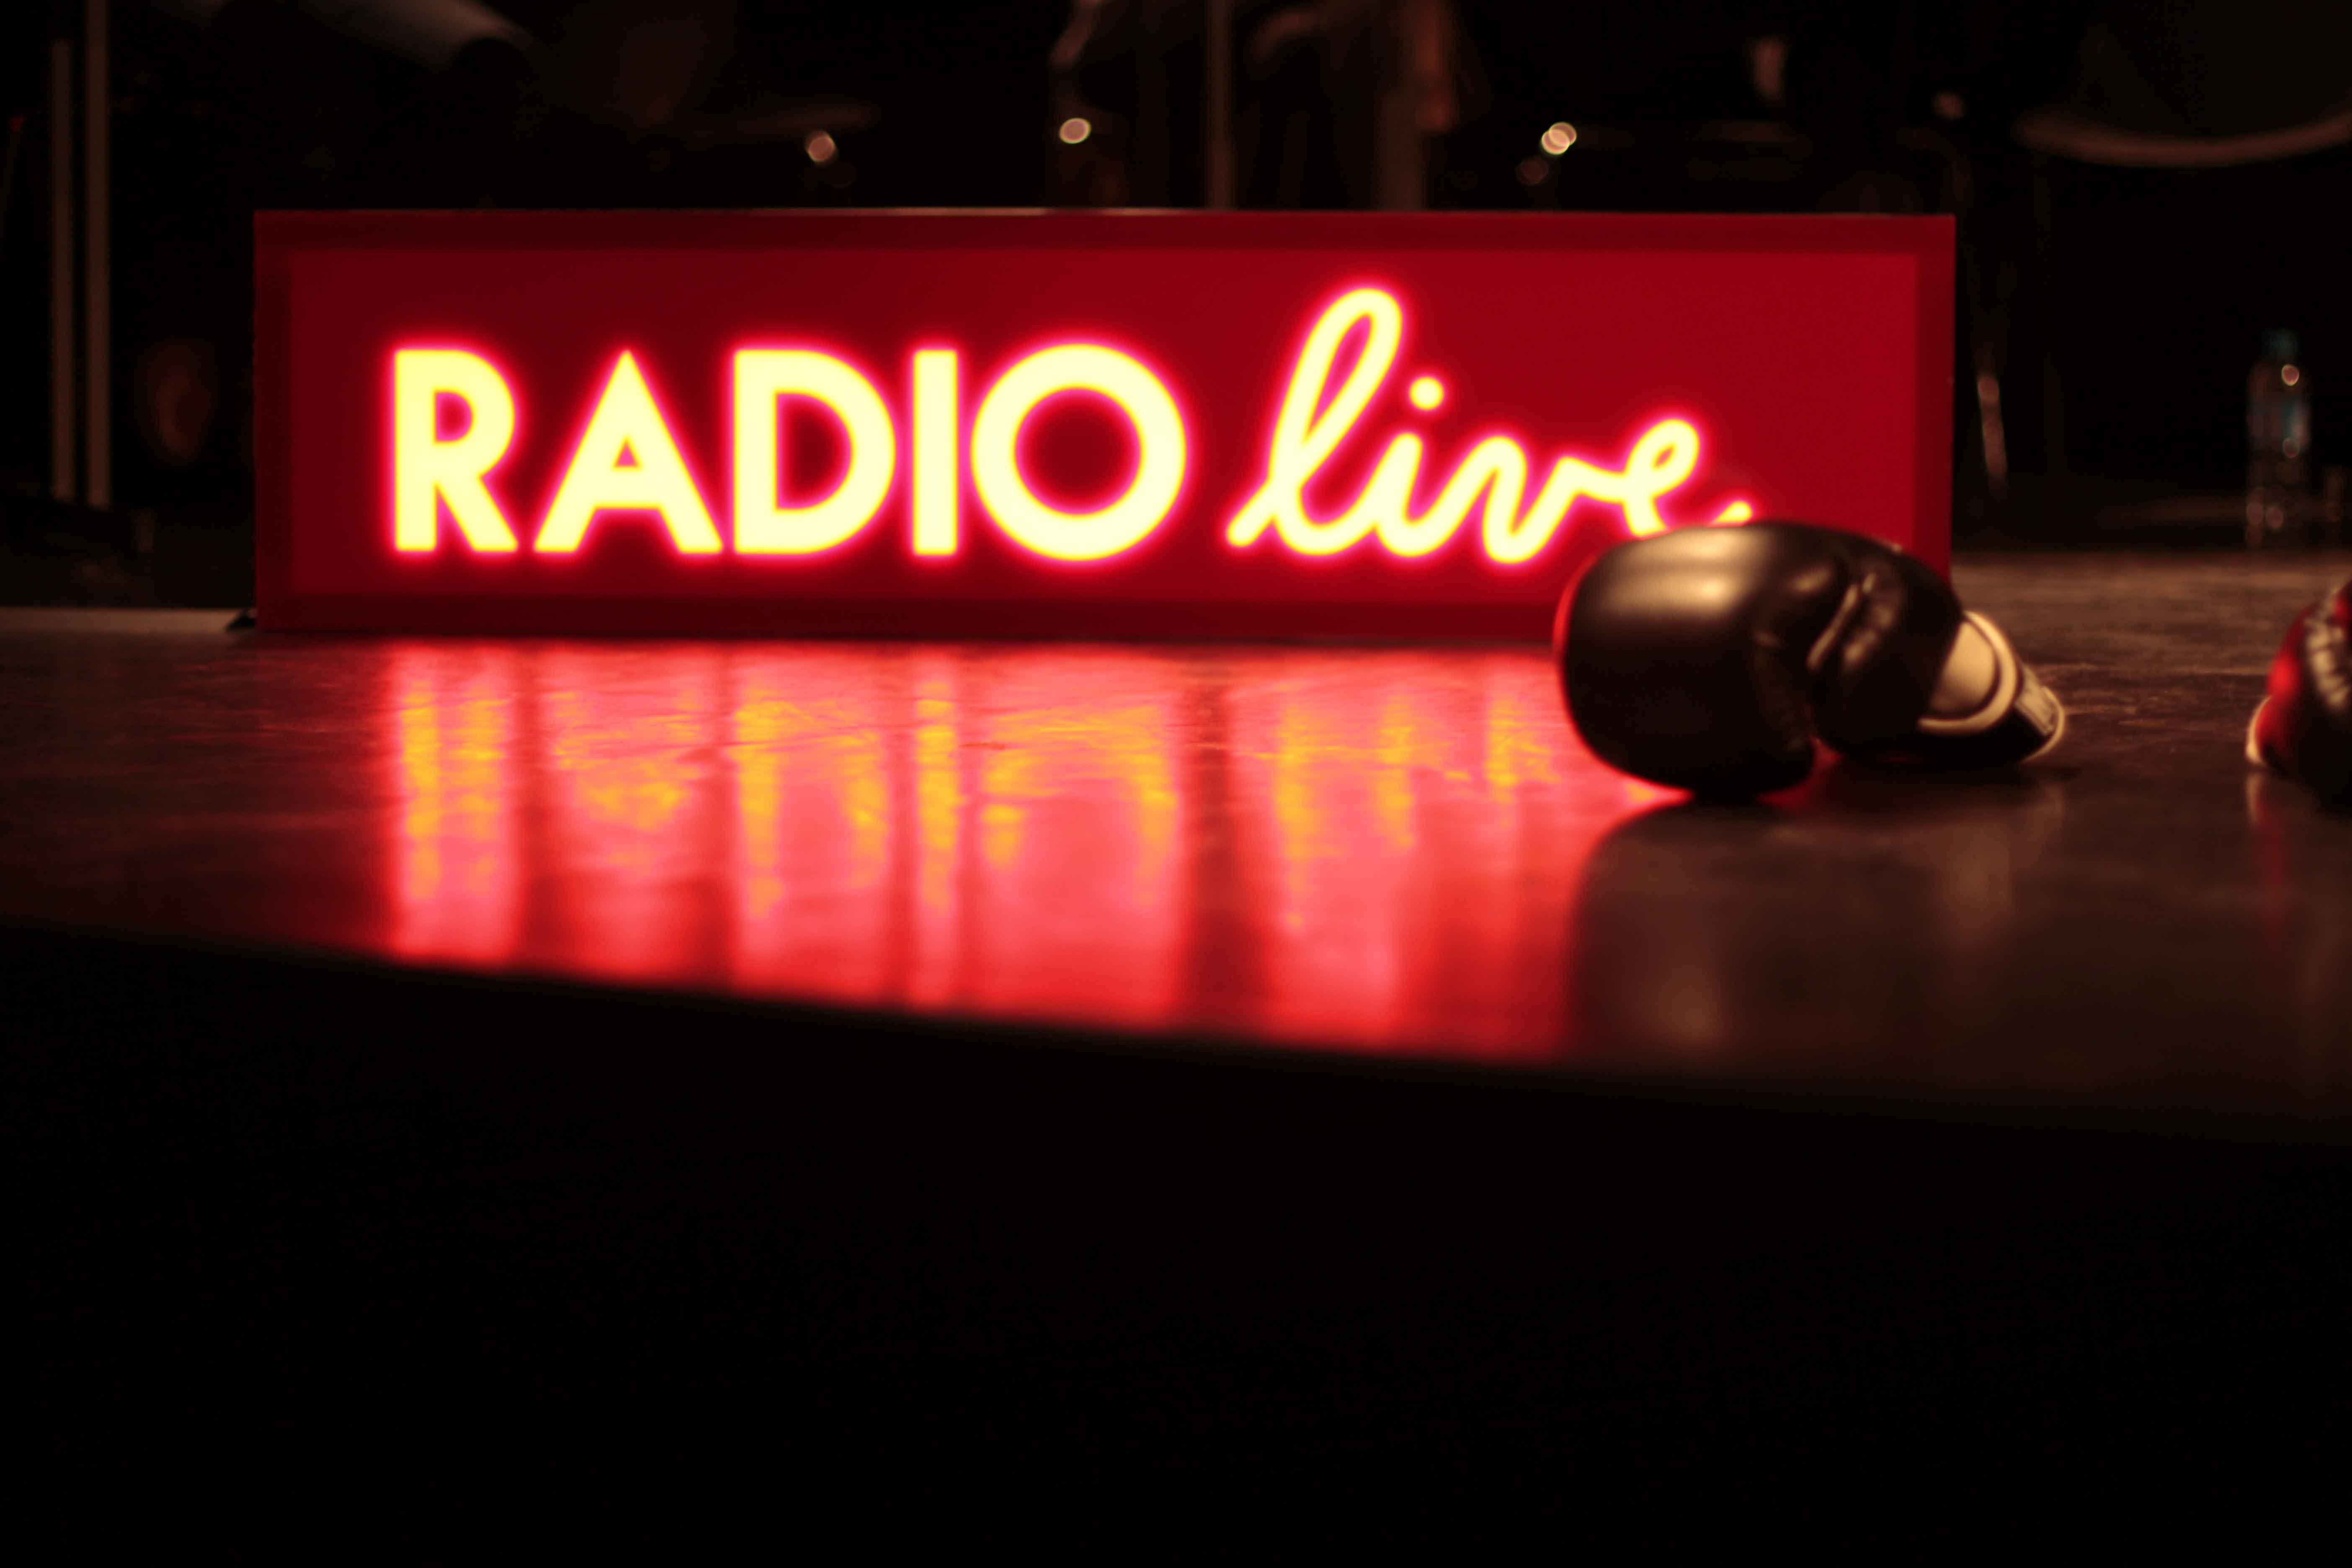 Radio Live